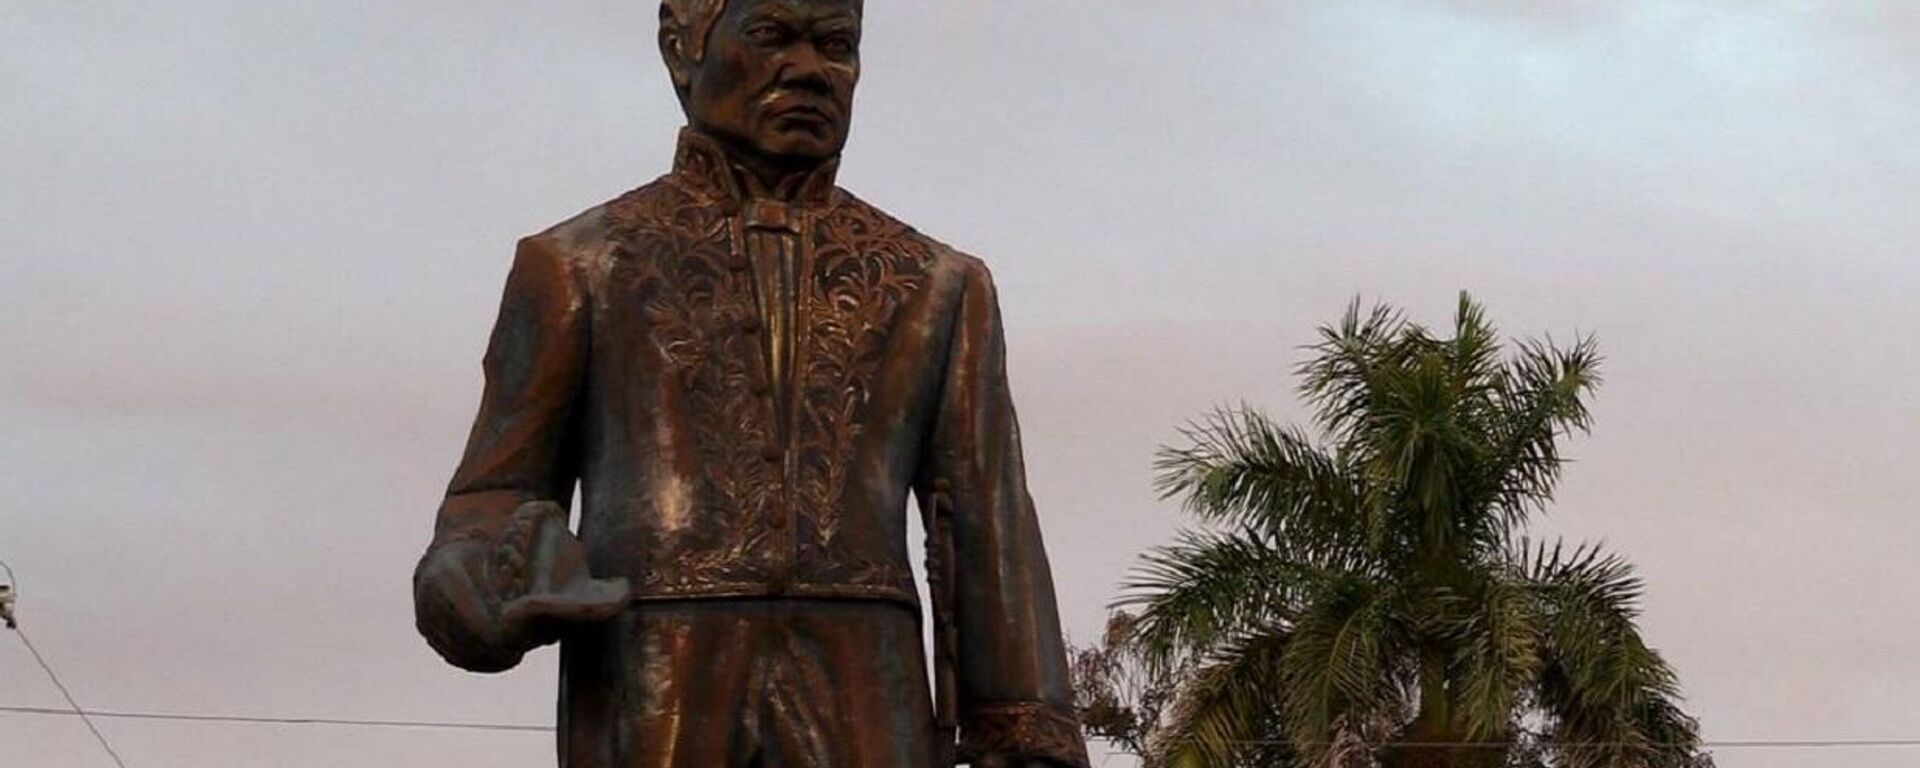 Monumentos a Rubén Darío en el Parque de los Poetas de la ciudad de León, Nicaragua - Sputnik Mundo, 1920, 18.01.2022